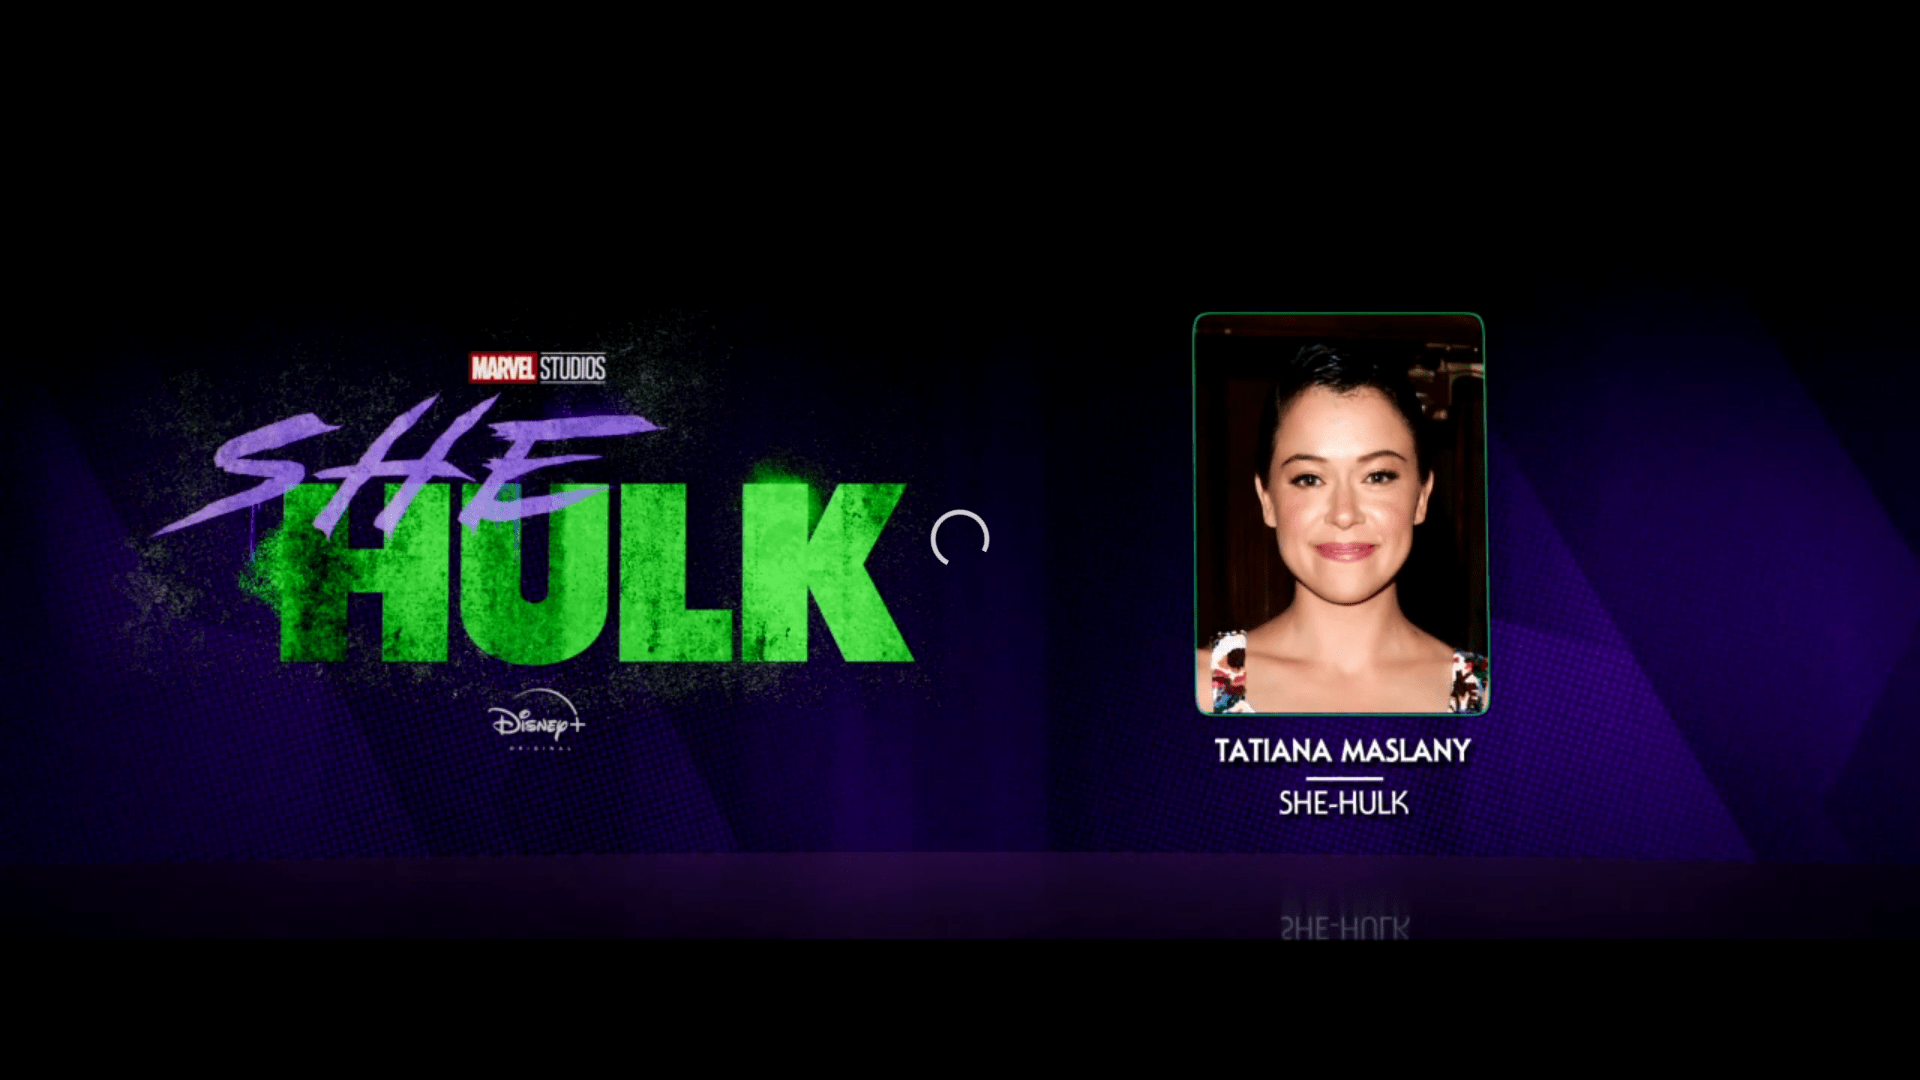 Tatiana Maslany announced as She-Hulk